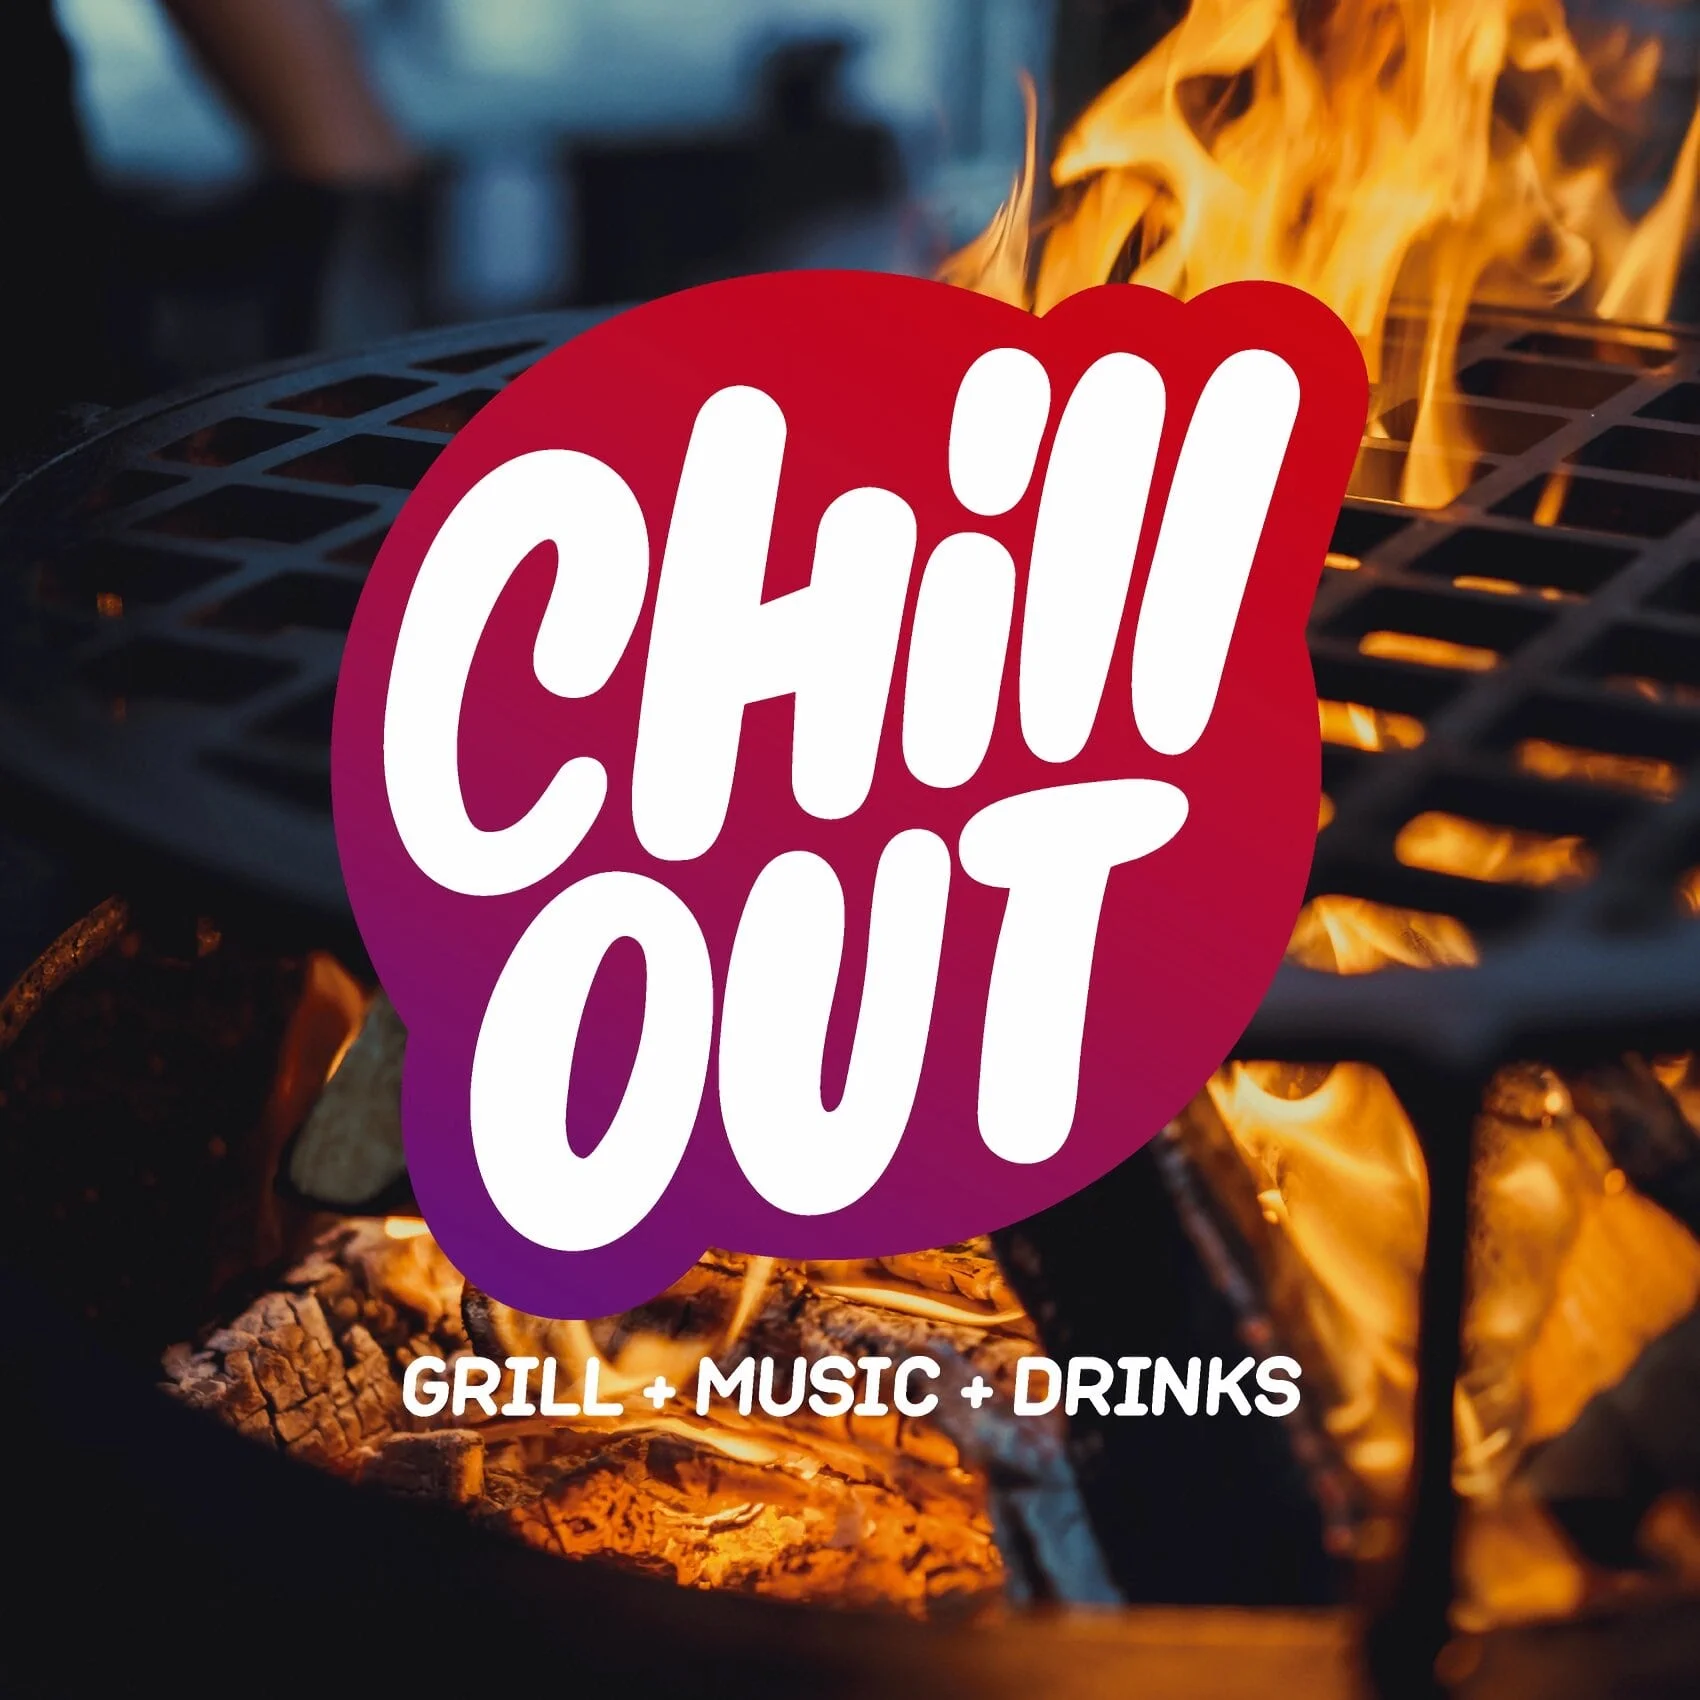 Chill Out - Restaurante al Grill-4718